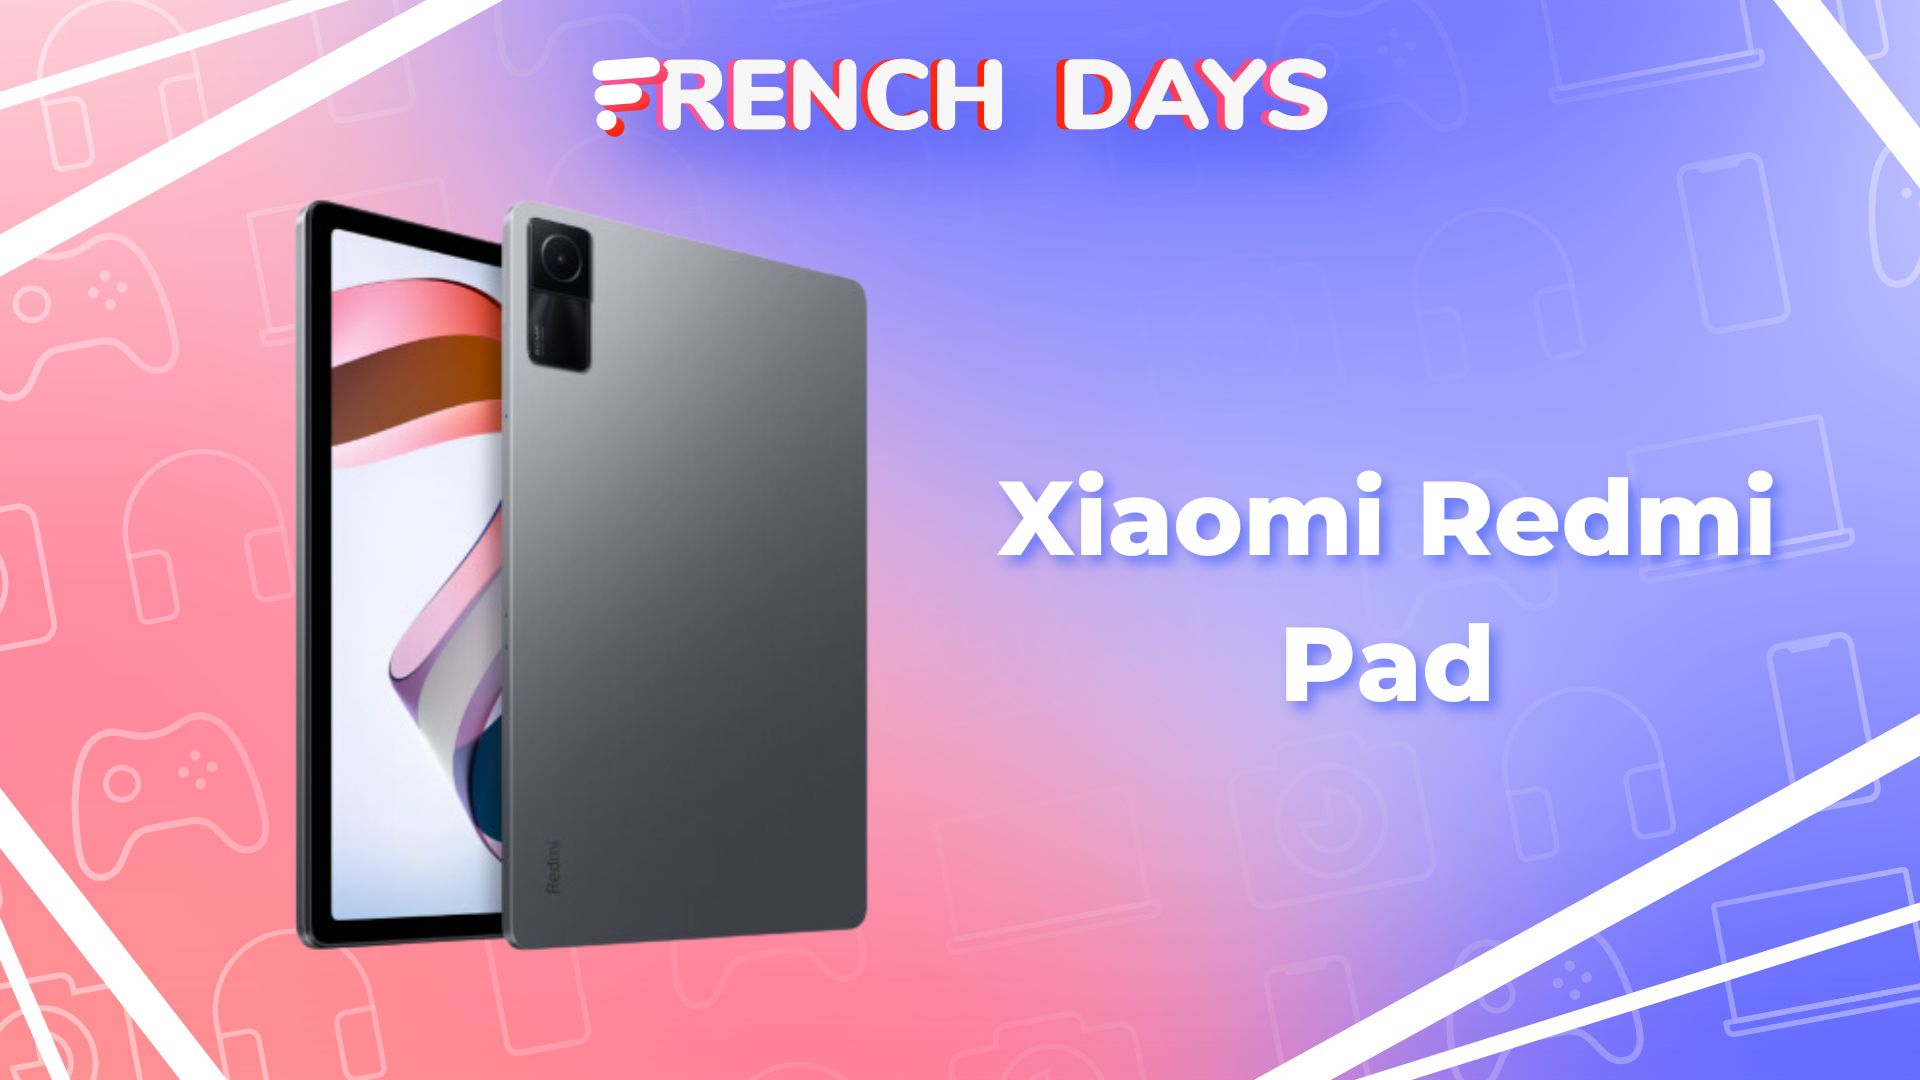 La balance connectée Xiaomi Mi Body est encore moins chère pour les French  Days